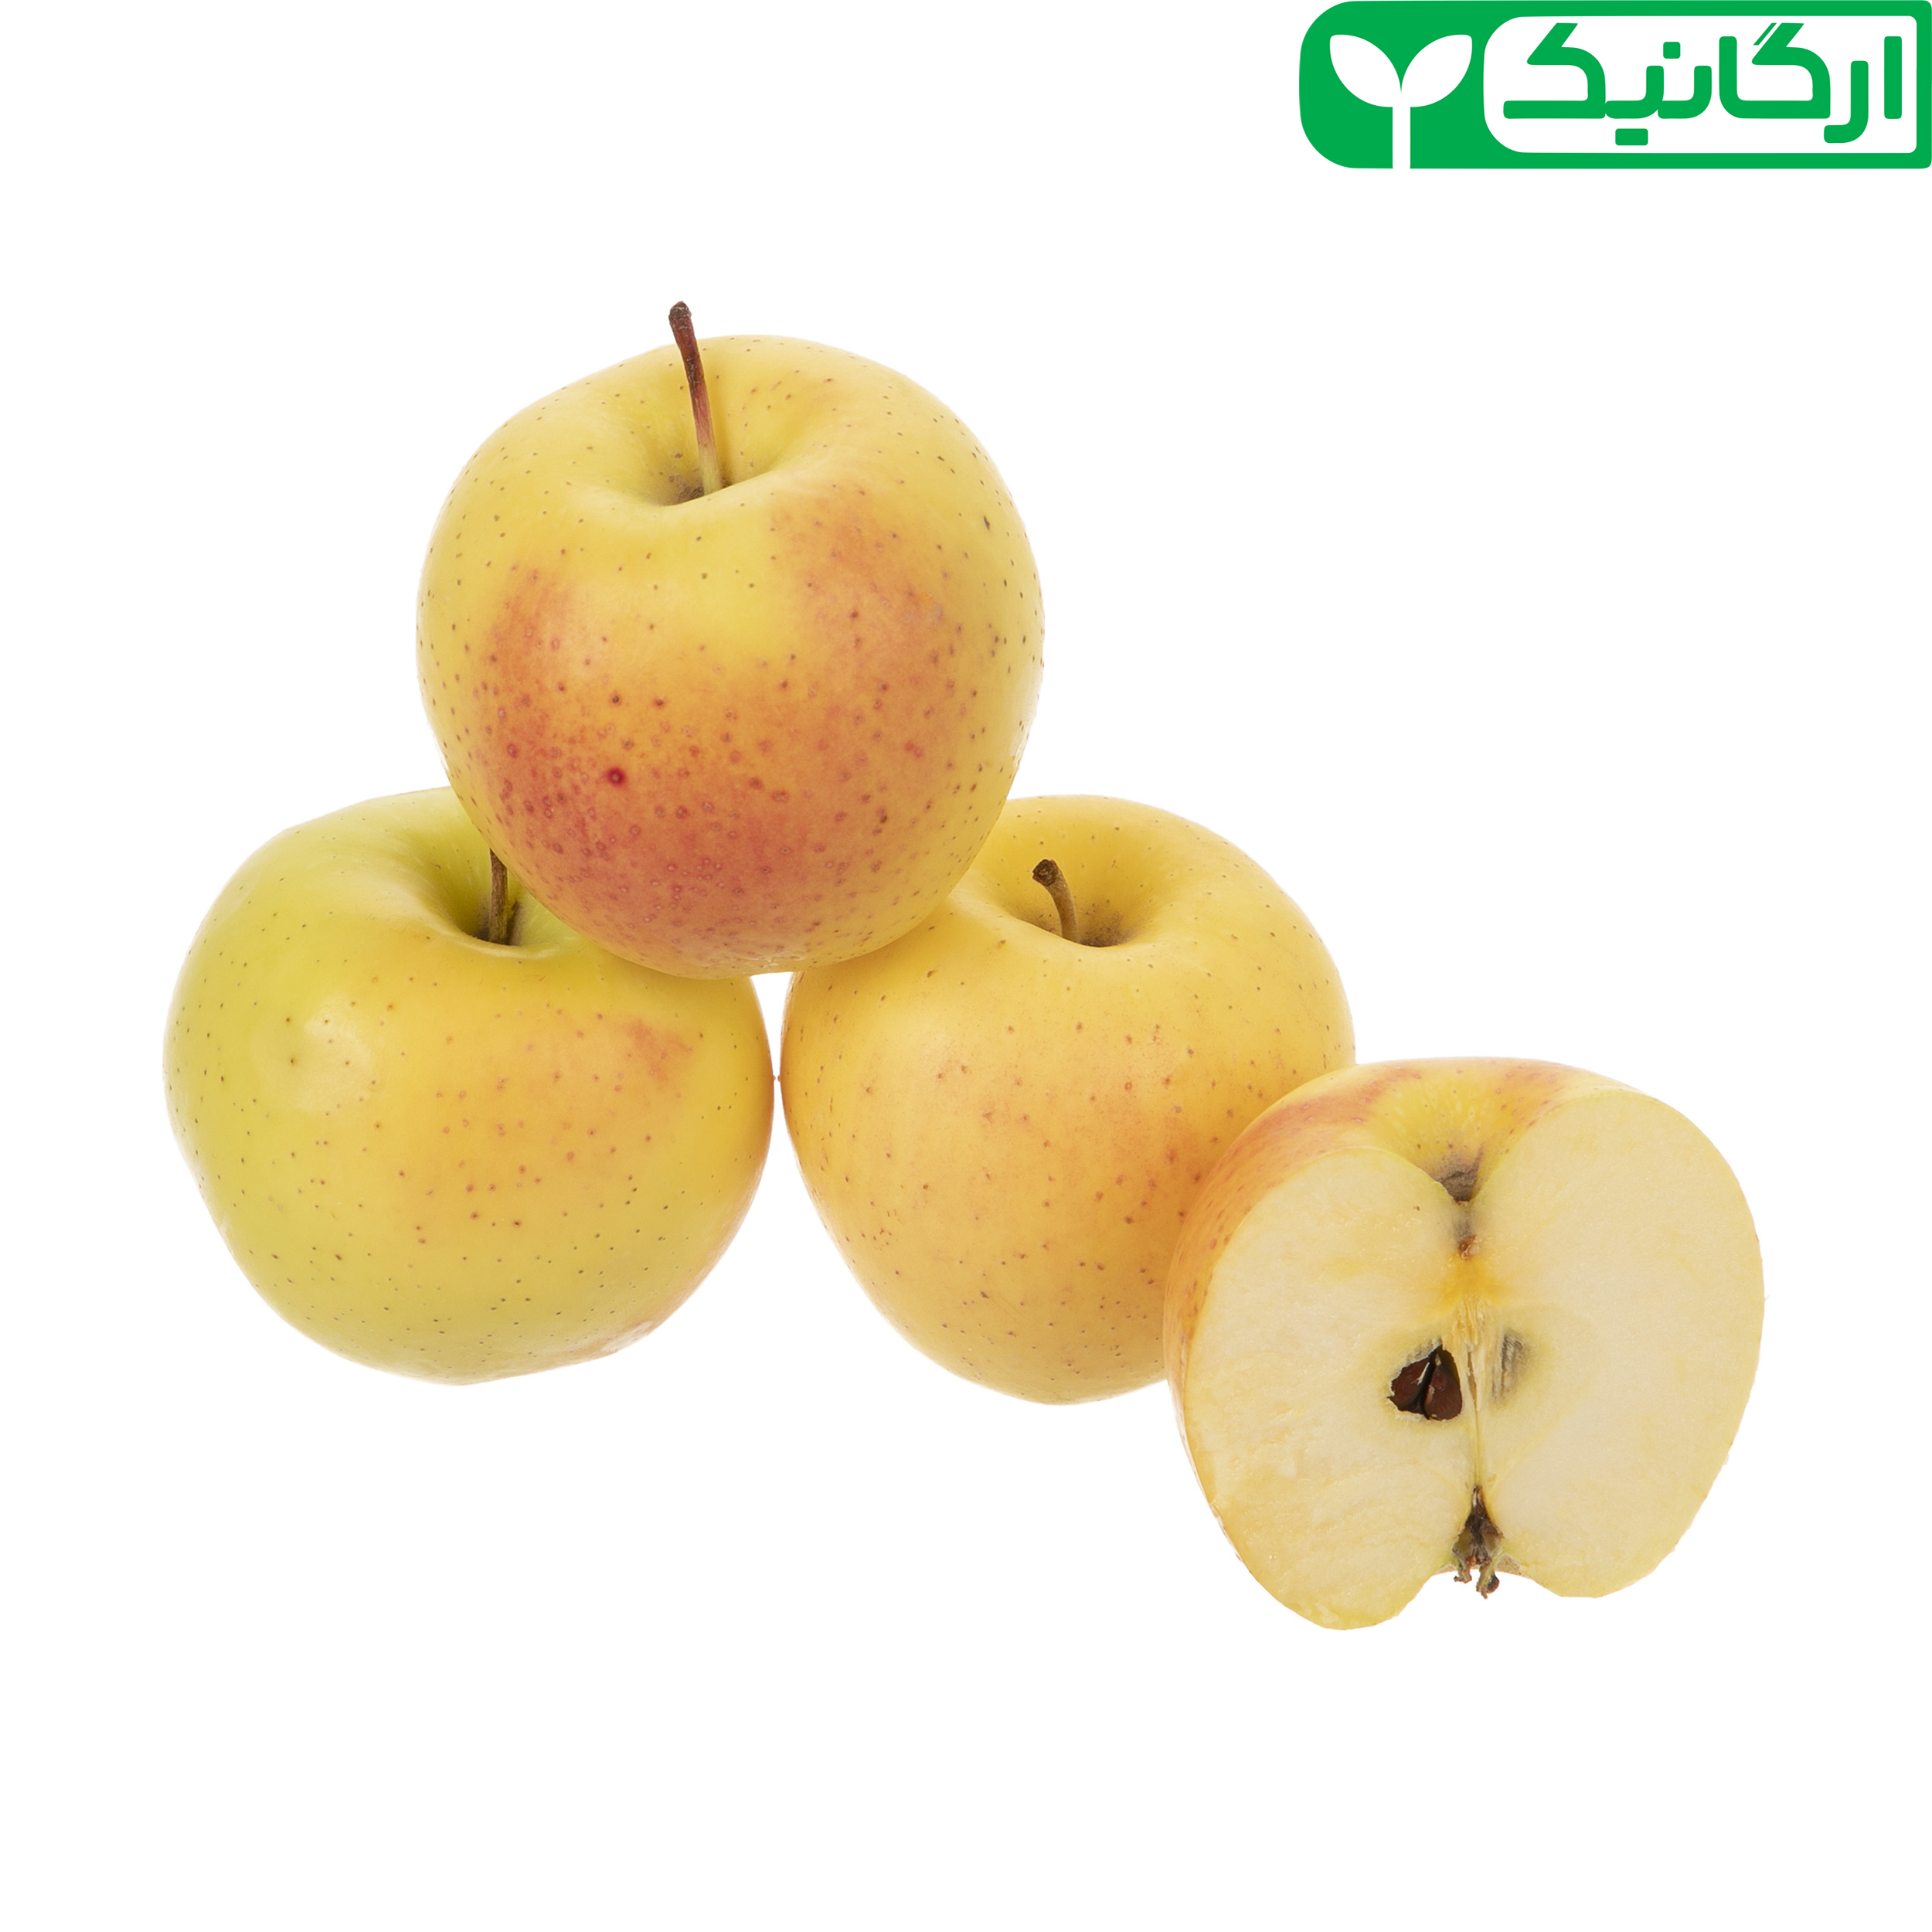 سیب زرد ارگانیک رضوانی - 1 کیلوگرم